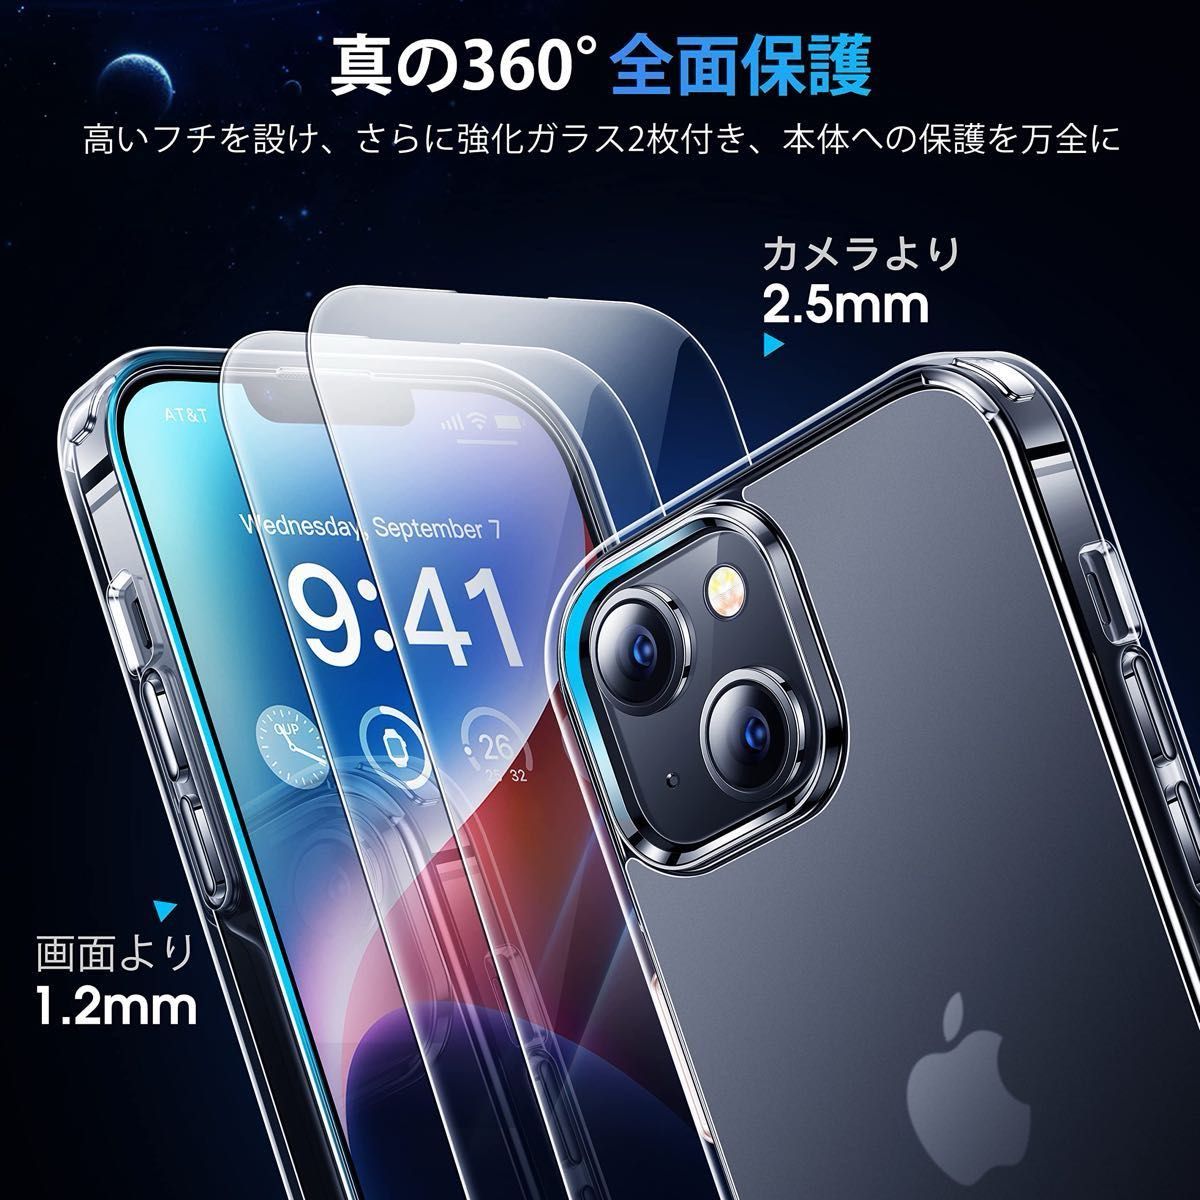 iPhone14Plus ケース クリア マット感 フィルム2枚付き Apple